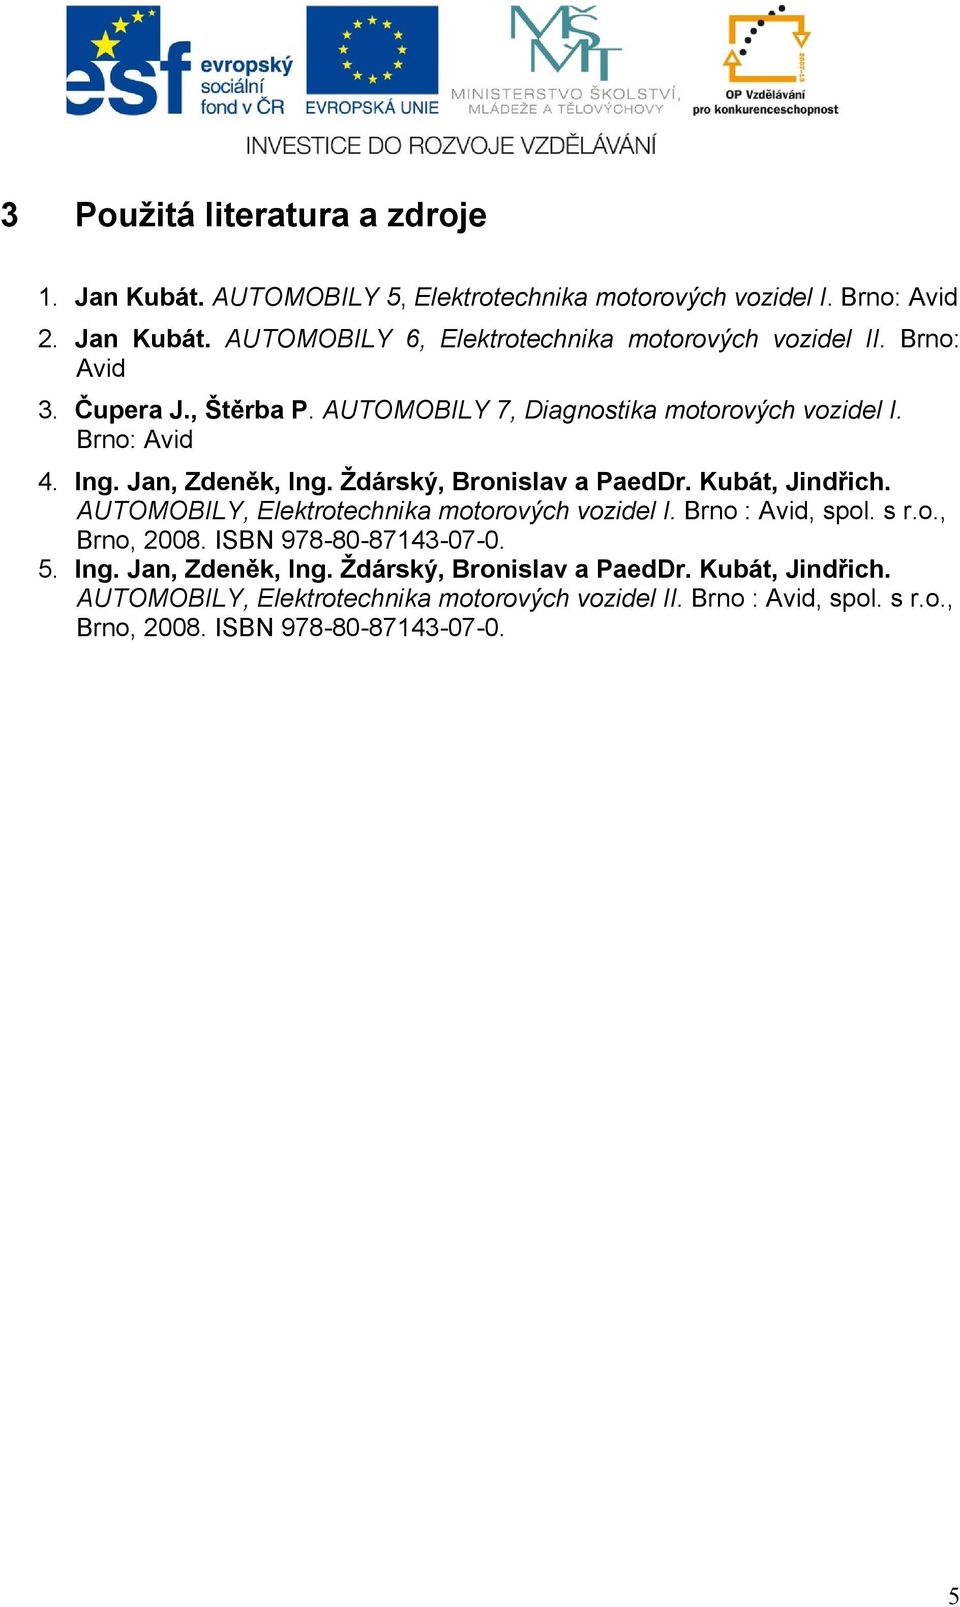 Kubát, Jindřich. AUTOMOBILY, Elektrotechnika motorových vozidel I. Brno : Avid, spol. s r.o., Brno, 2008. ISBN 978-80-87143-07-0. 5. Ing. Jan, Zdeněk, Ing.